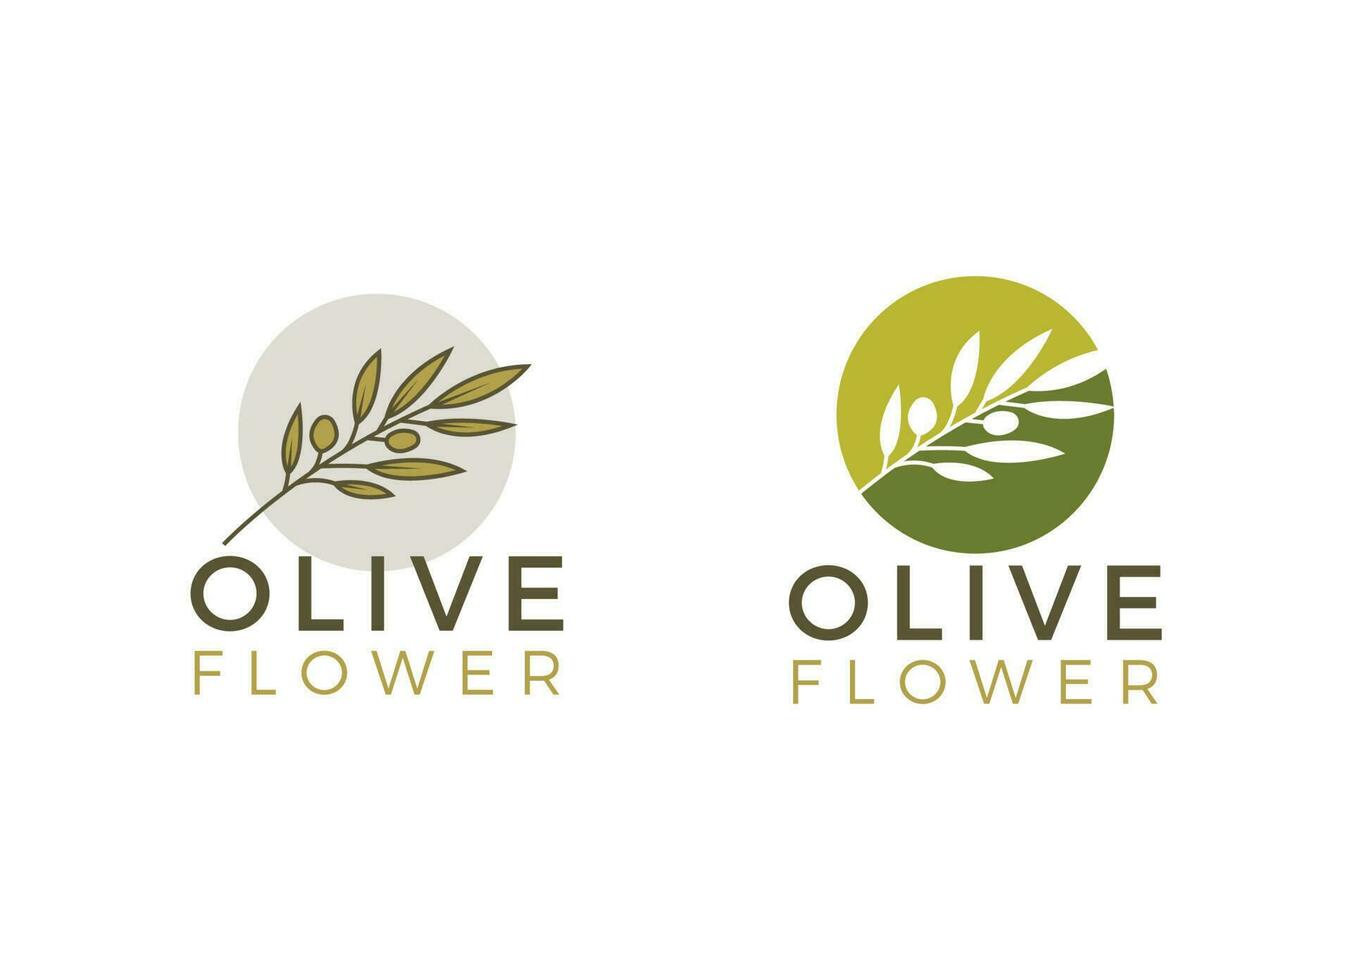 Nature herbal olive oil plant, olive leaf flower logo design vector